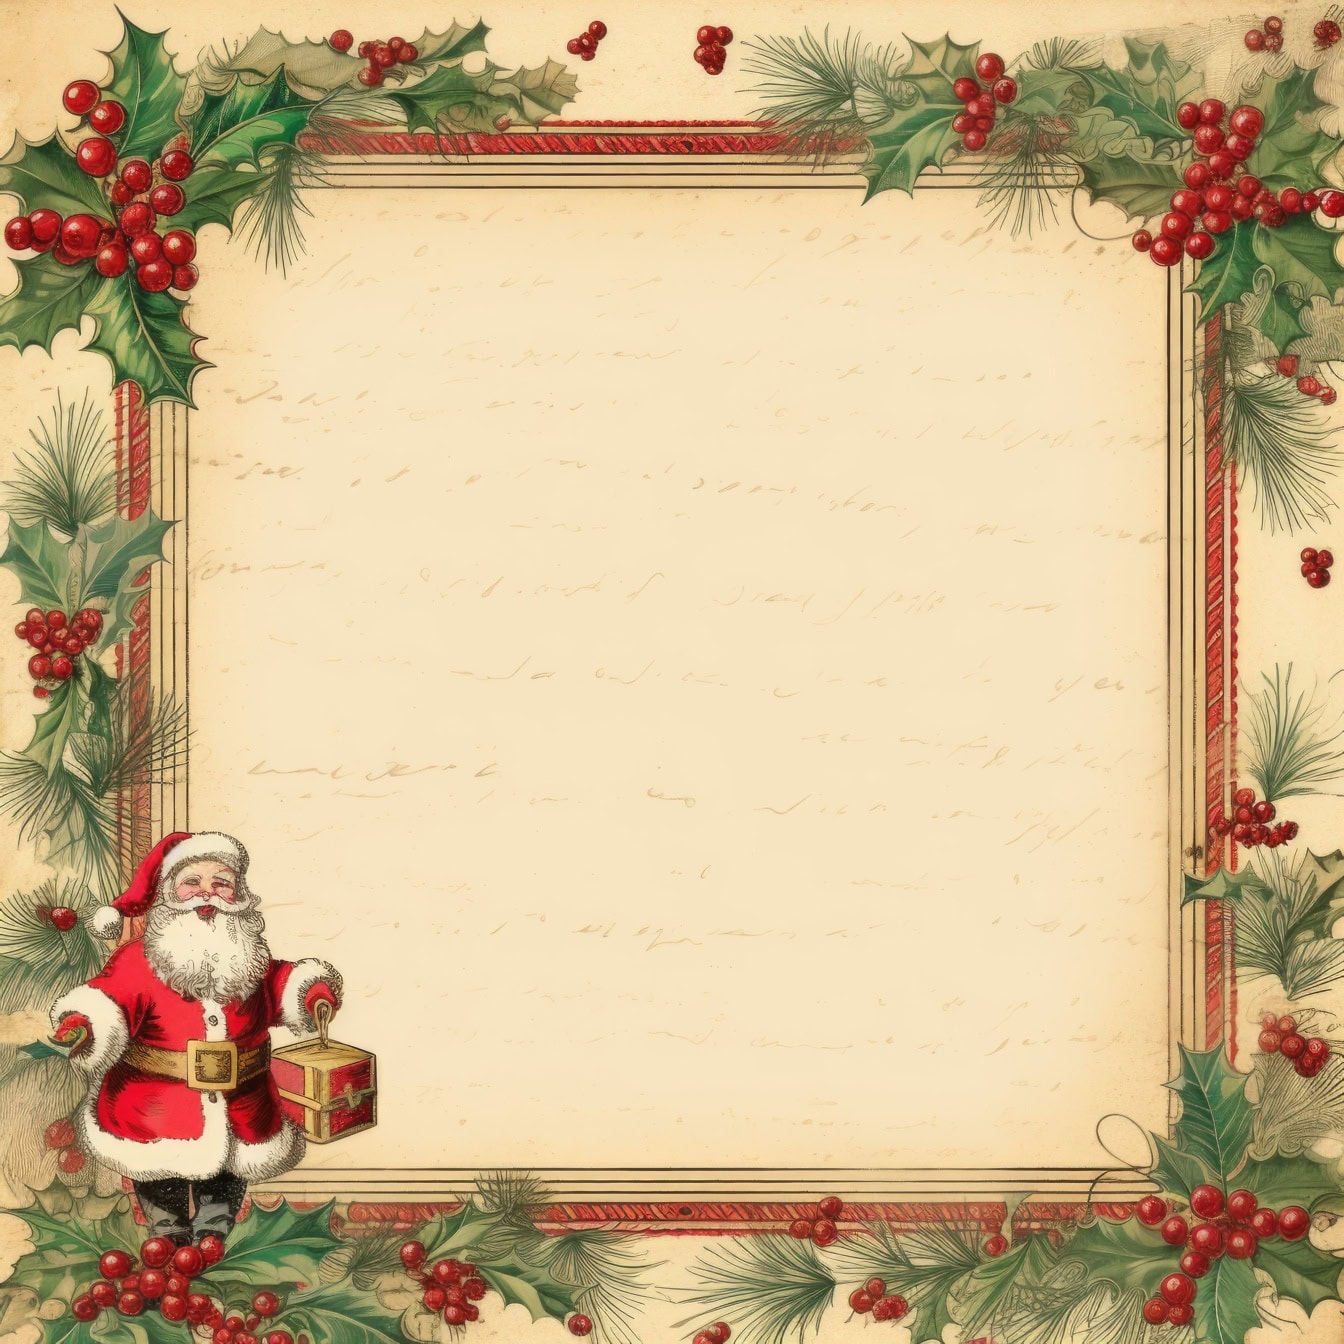 Ένα παραδοσιακό πρότυπο χριστουγεννιάτικης ευχετήριας κάρτας σε ρετρό στυλ με πλαίσιο στεφάνι από πουρνάρι και με τον Άγιο Βασίλη